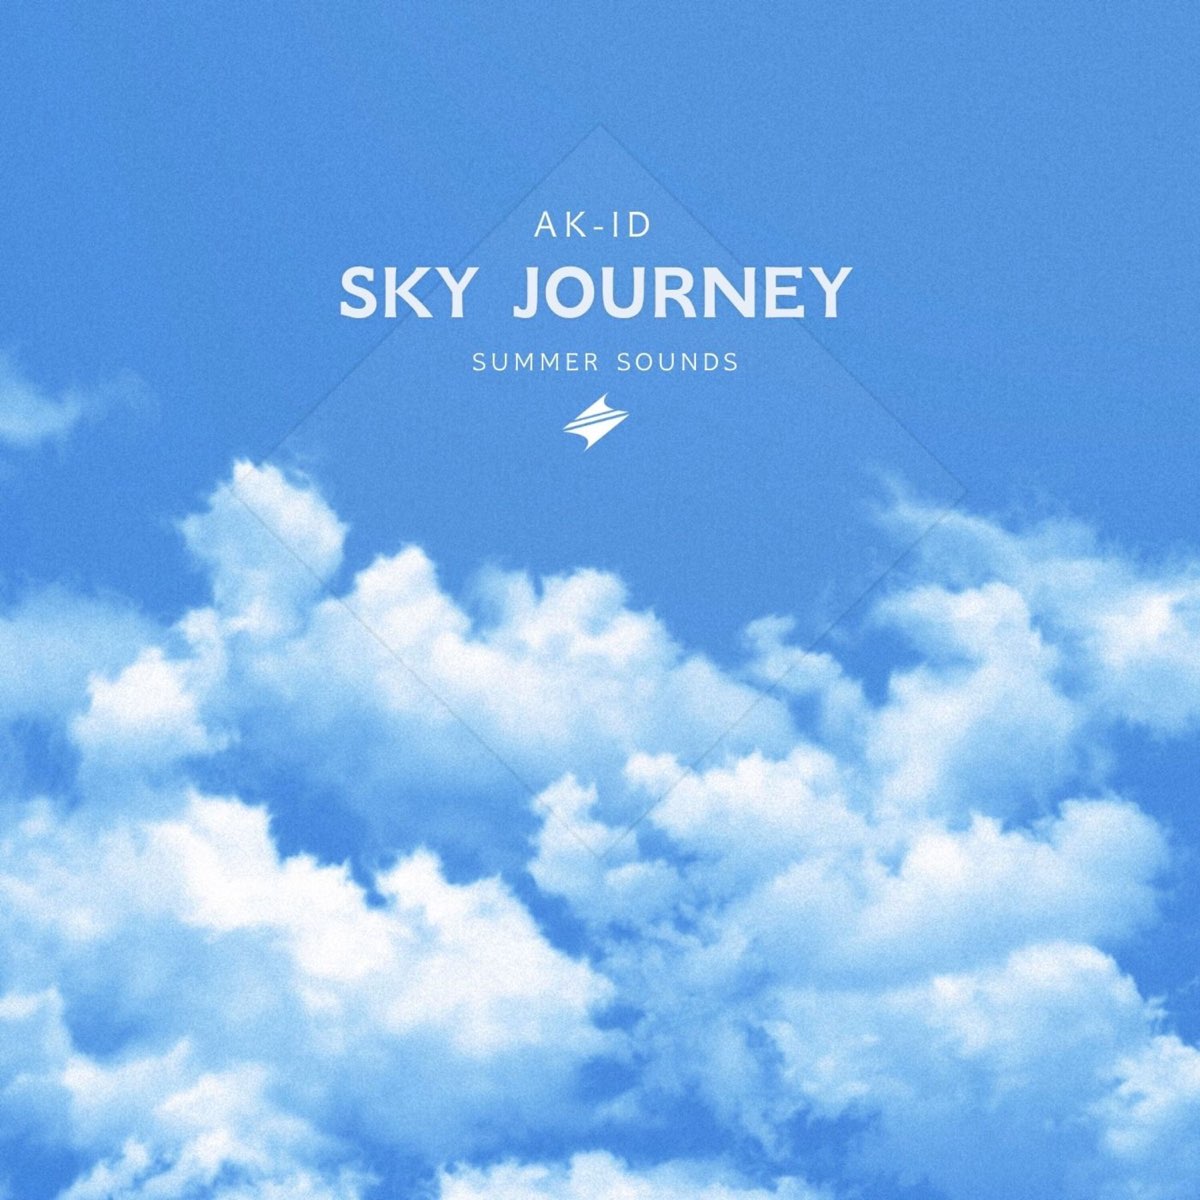 Джорни и Скай. Journey and Sky. Музыка неба. Sky journey